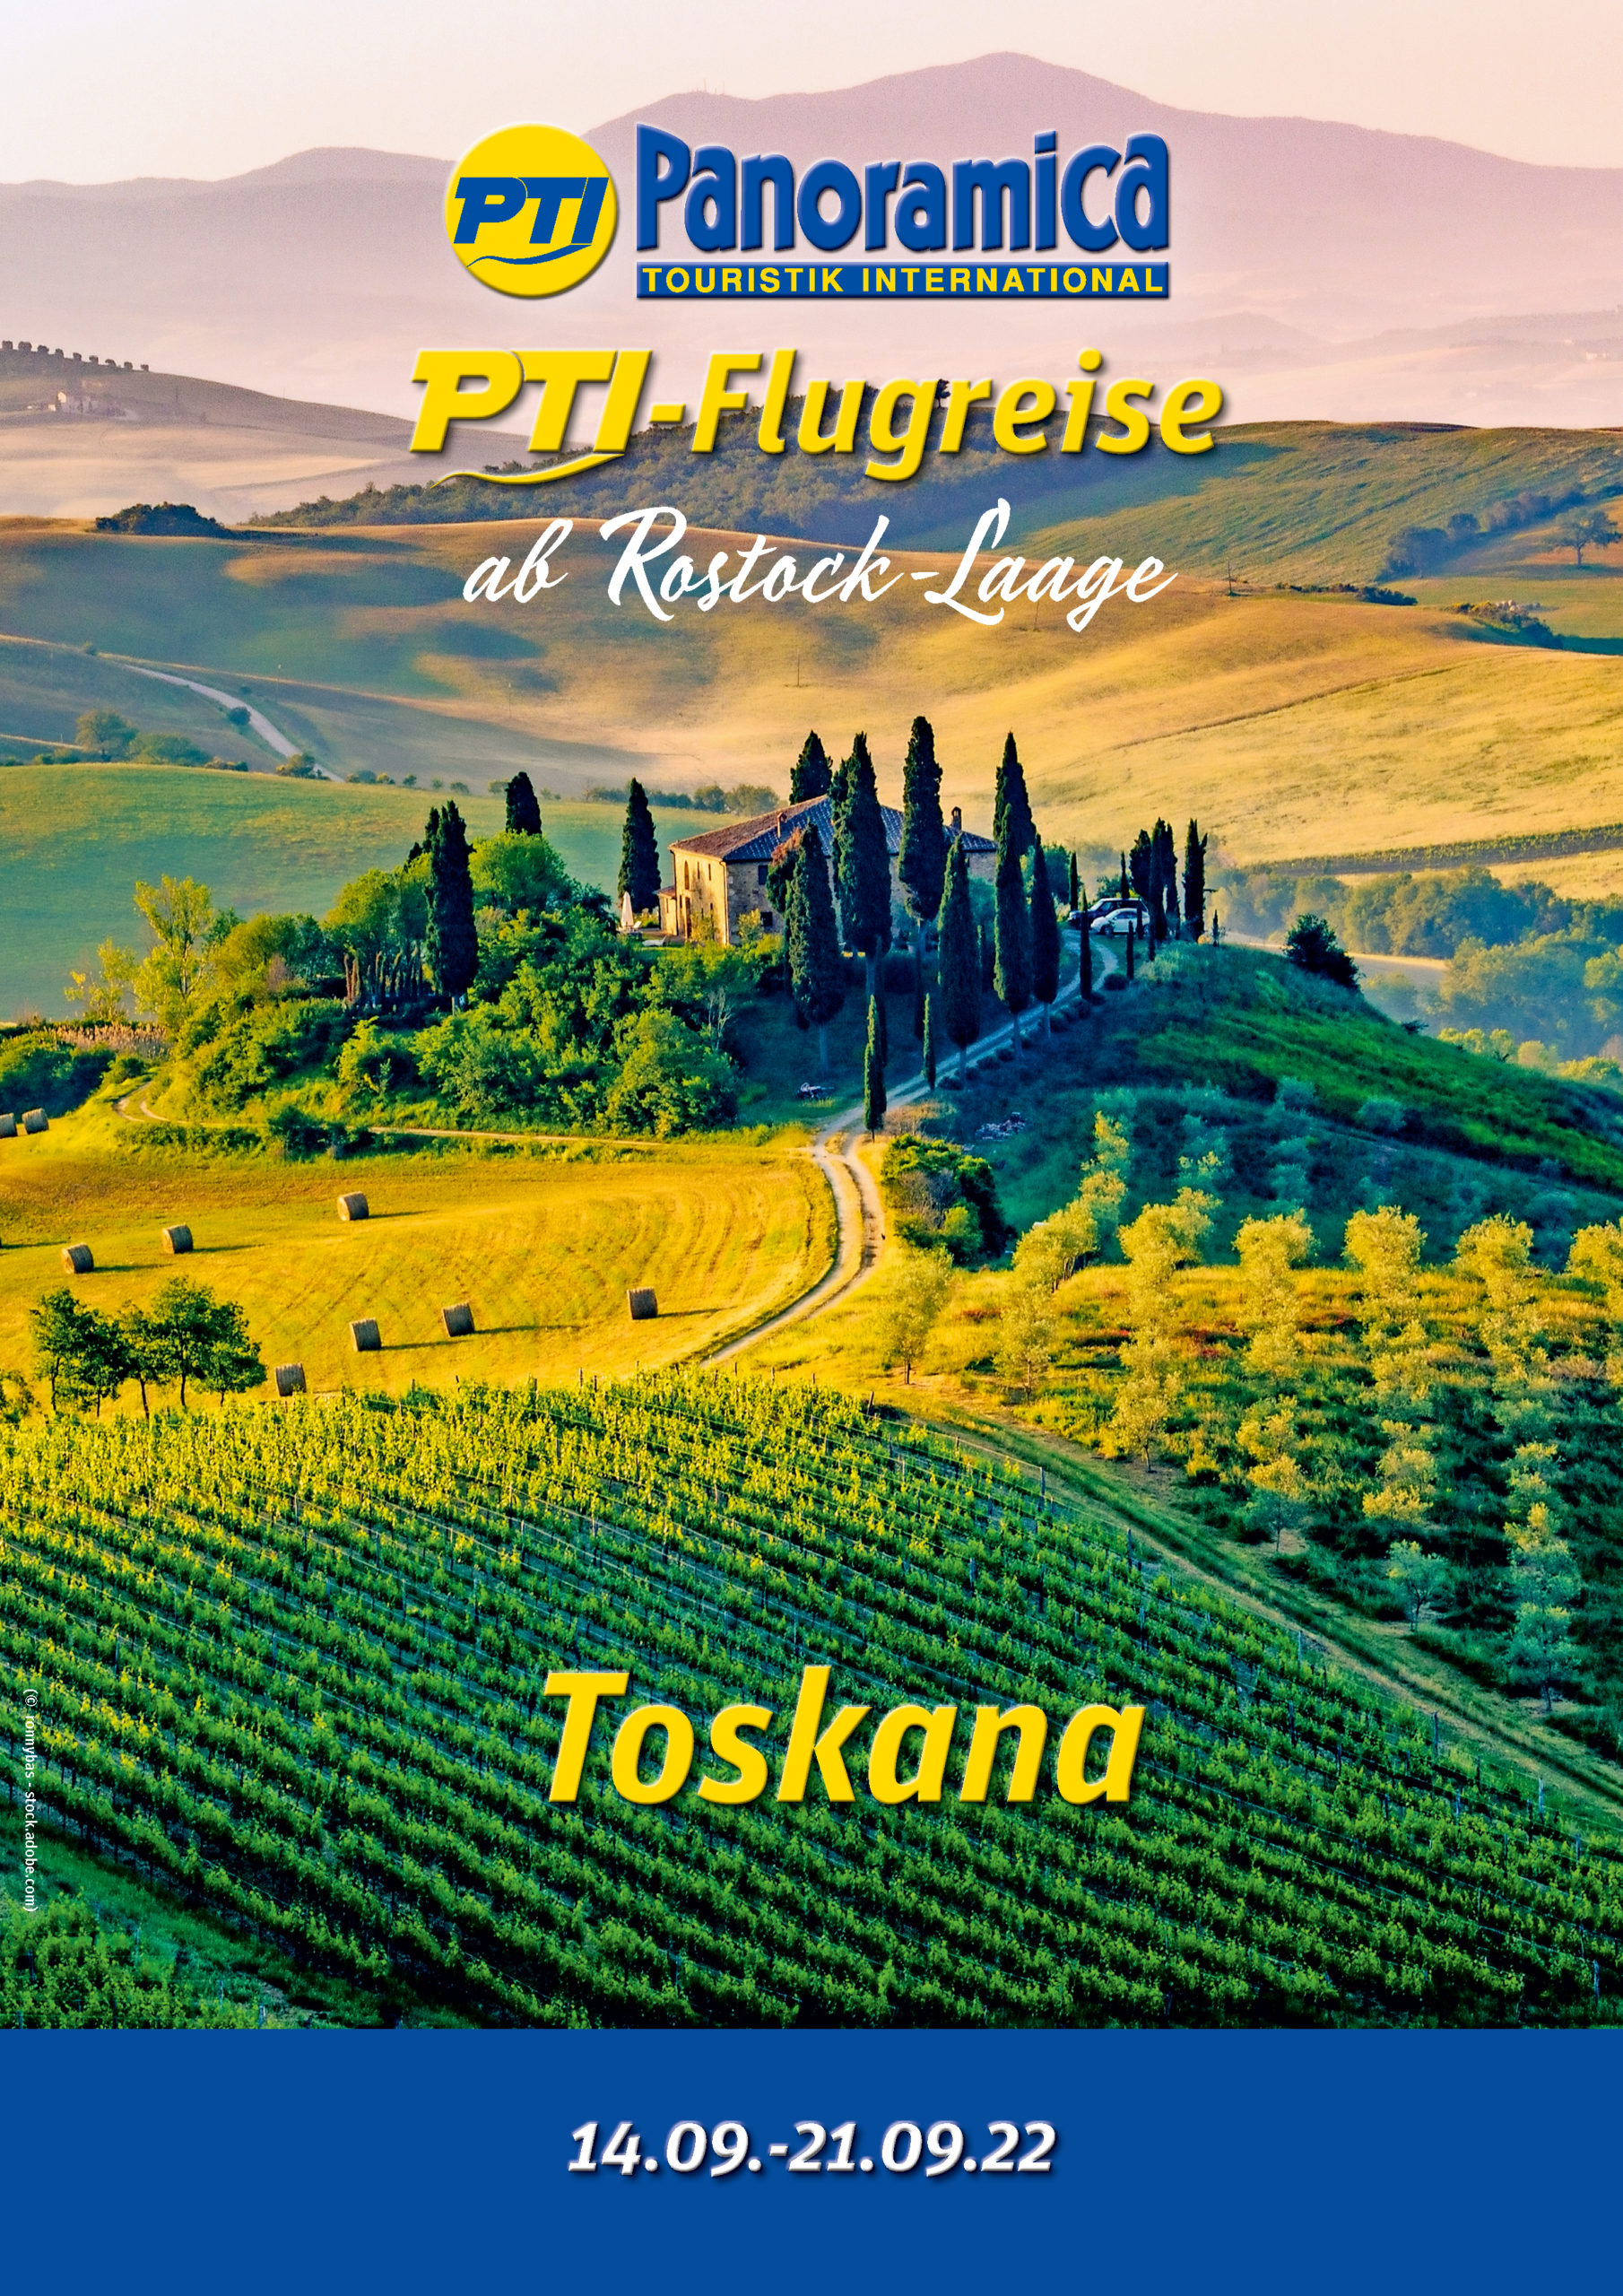 A4_DS_Bologna_RLG_Toskana_2022